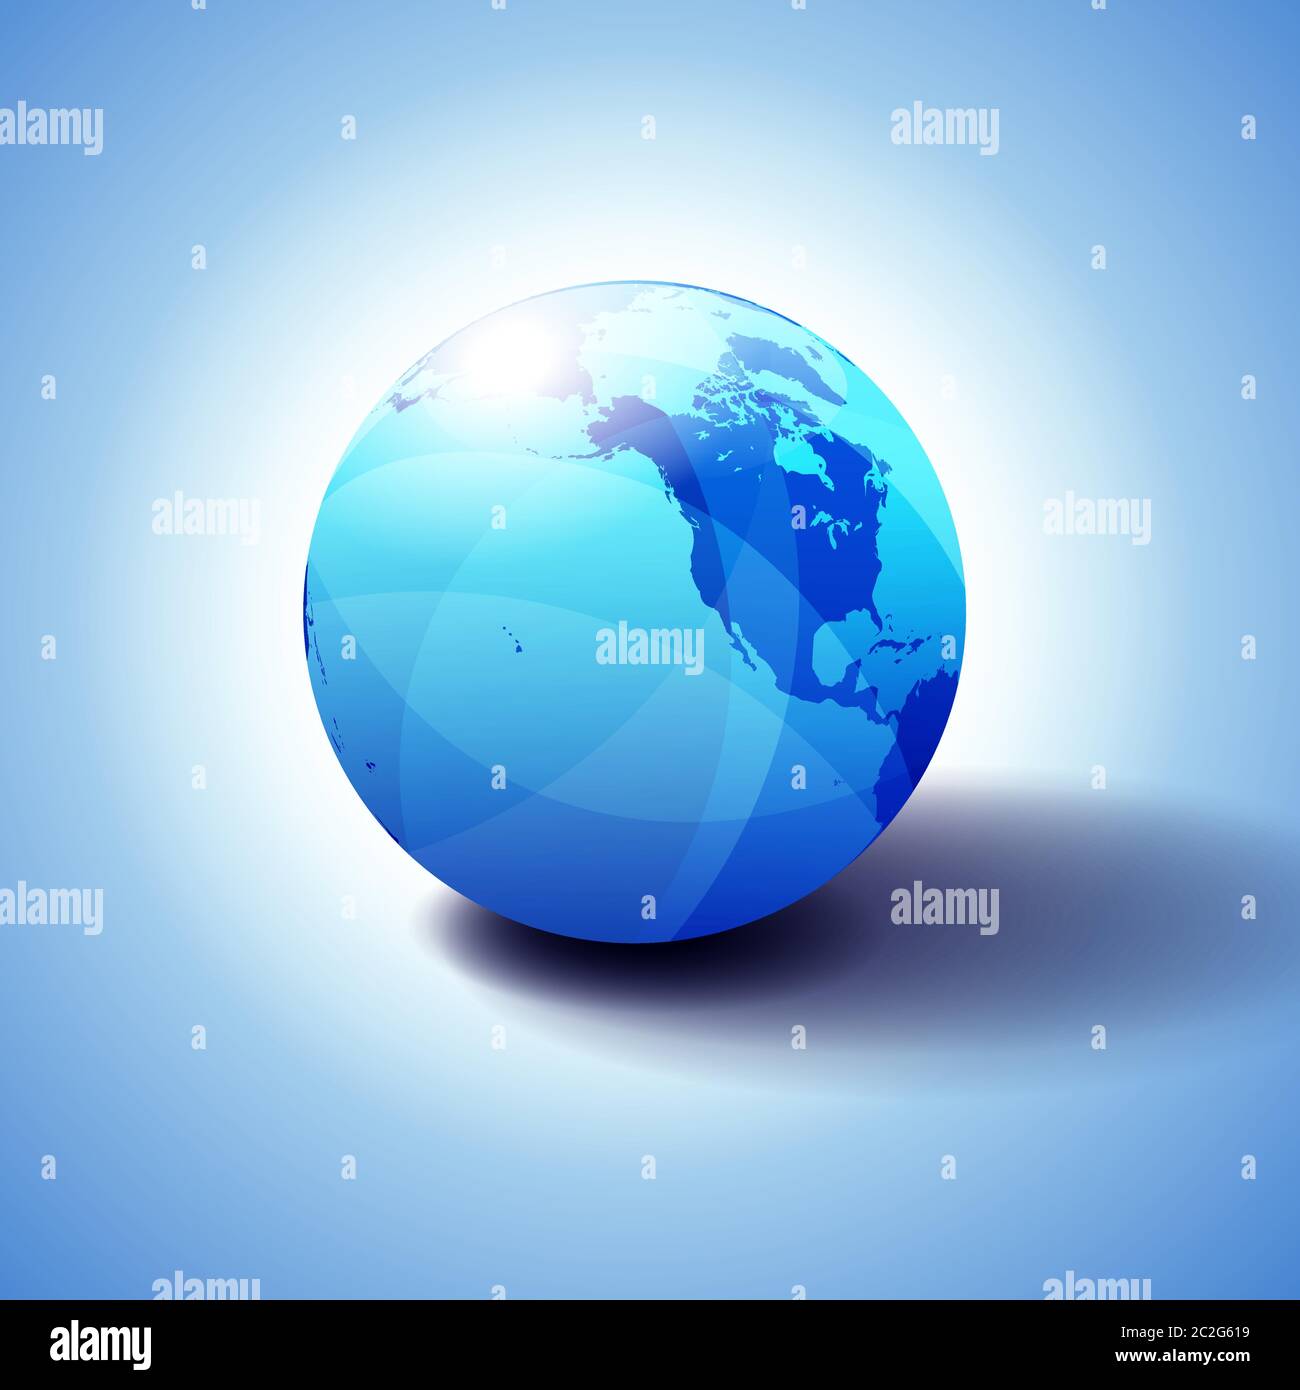 Nordamerika, Kanada, Sibirien und Hawaii Hintergrund mit Globe Icon 3D Illustration, glänzende Kugel mit Global Map in Subtle Blues Stock Vektor